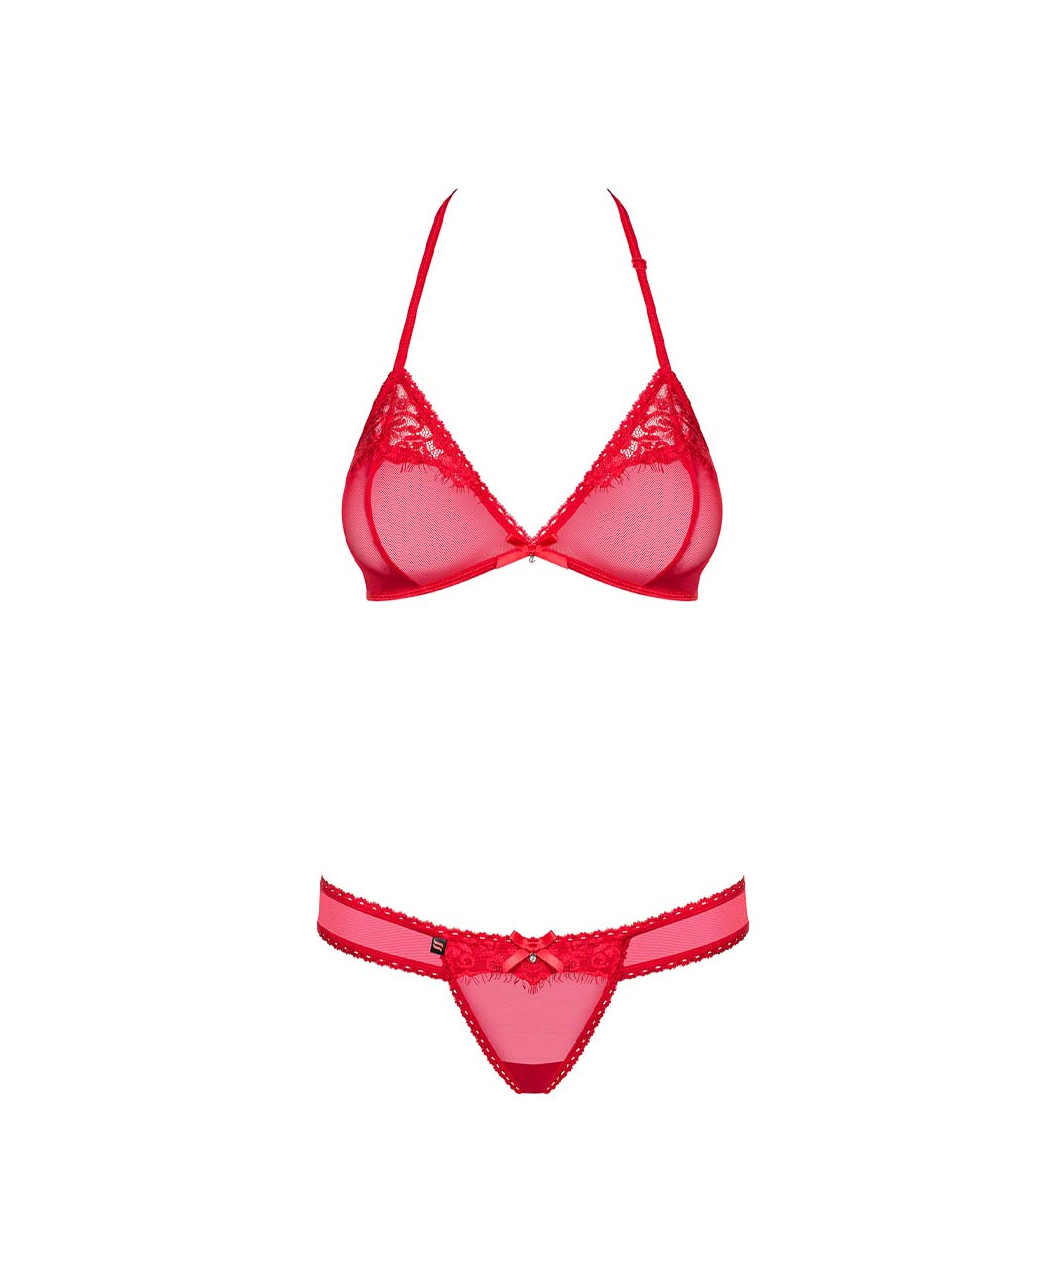 Obsessive red sheer mesh lingerie set